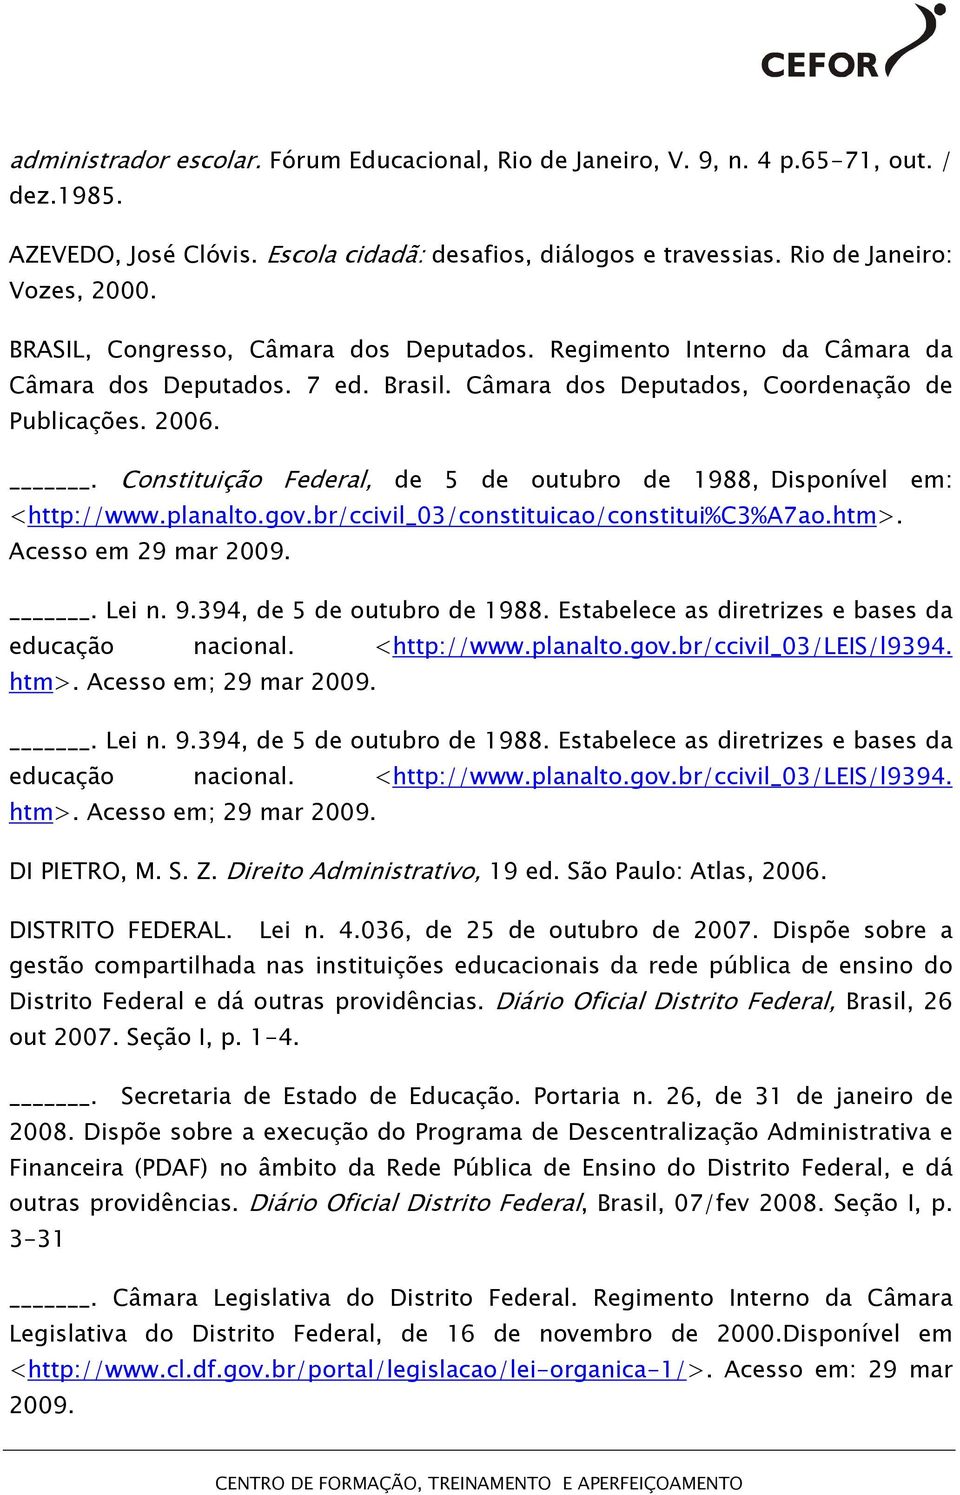 . Constituição Federal, de 5 de outubro de 1988, Disponível em: <http://www.planalto.gov.br/ccivil_03/constituicao/constitui%c3%a7ao.htm>. Acesso em 29 mar 2009.. Lei n. 9.